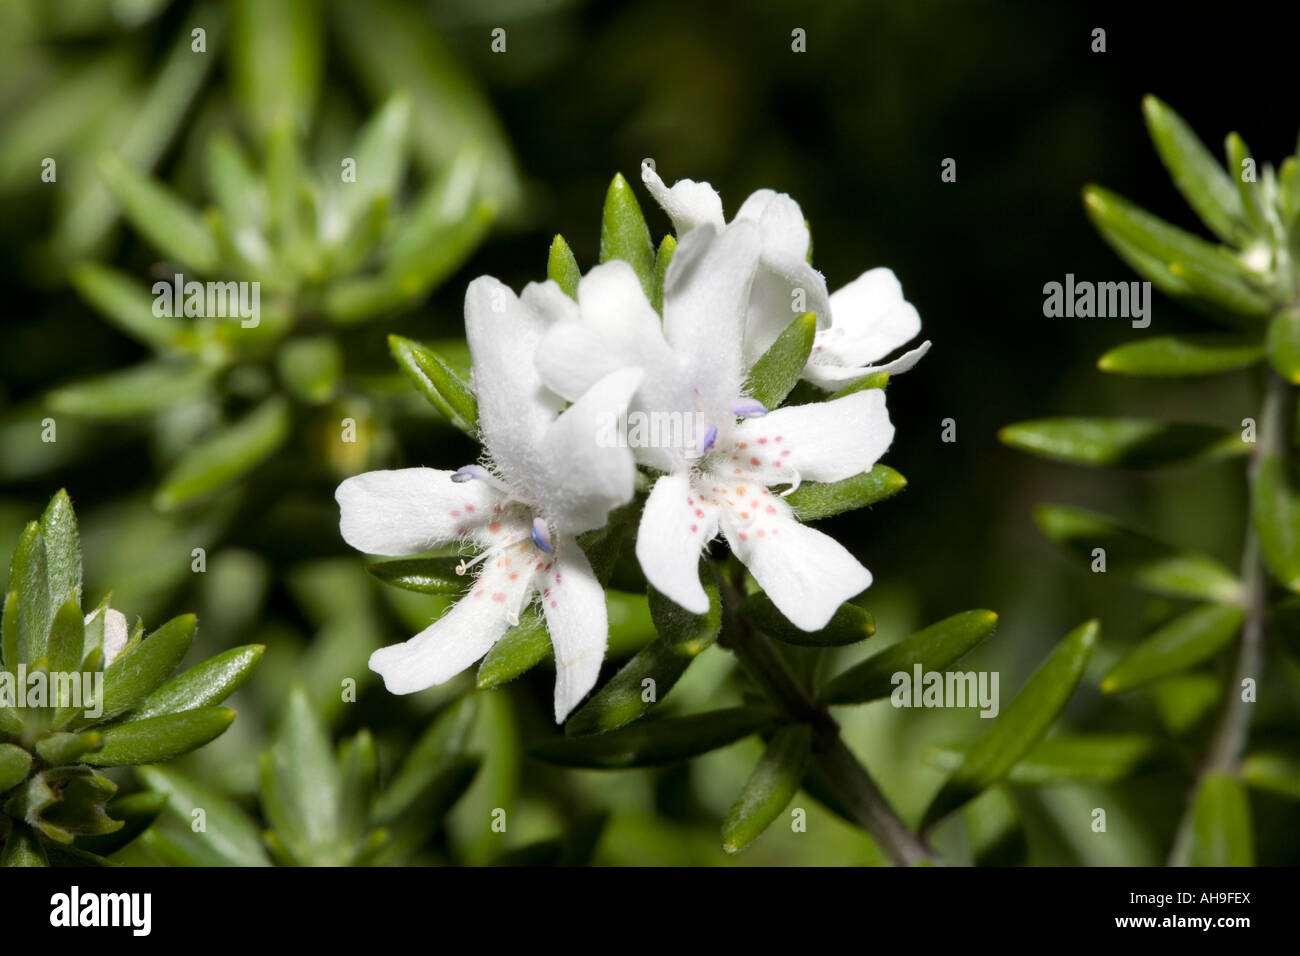 Westringia- Westringia eremicola- Family Lamiaceae Stock Photo